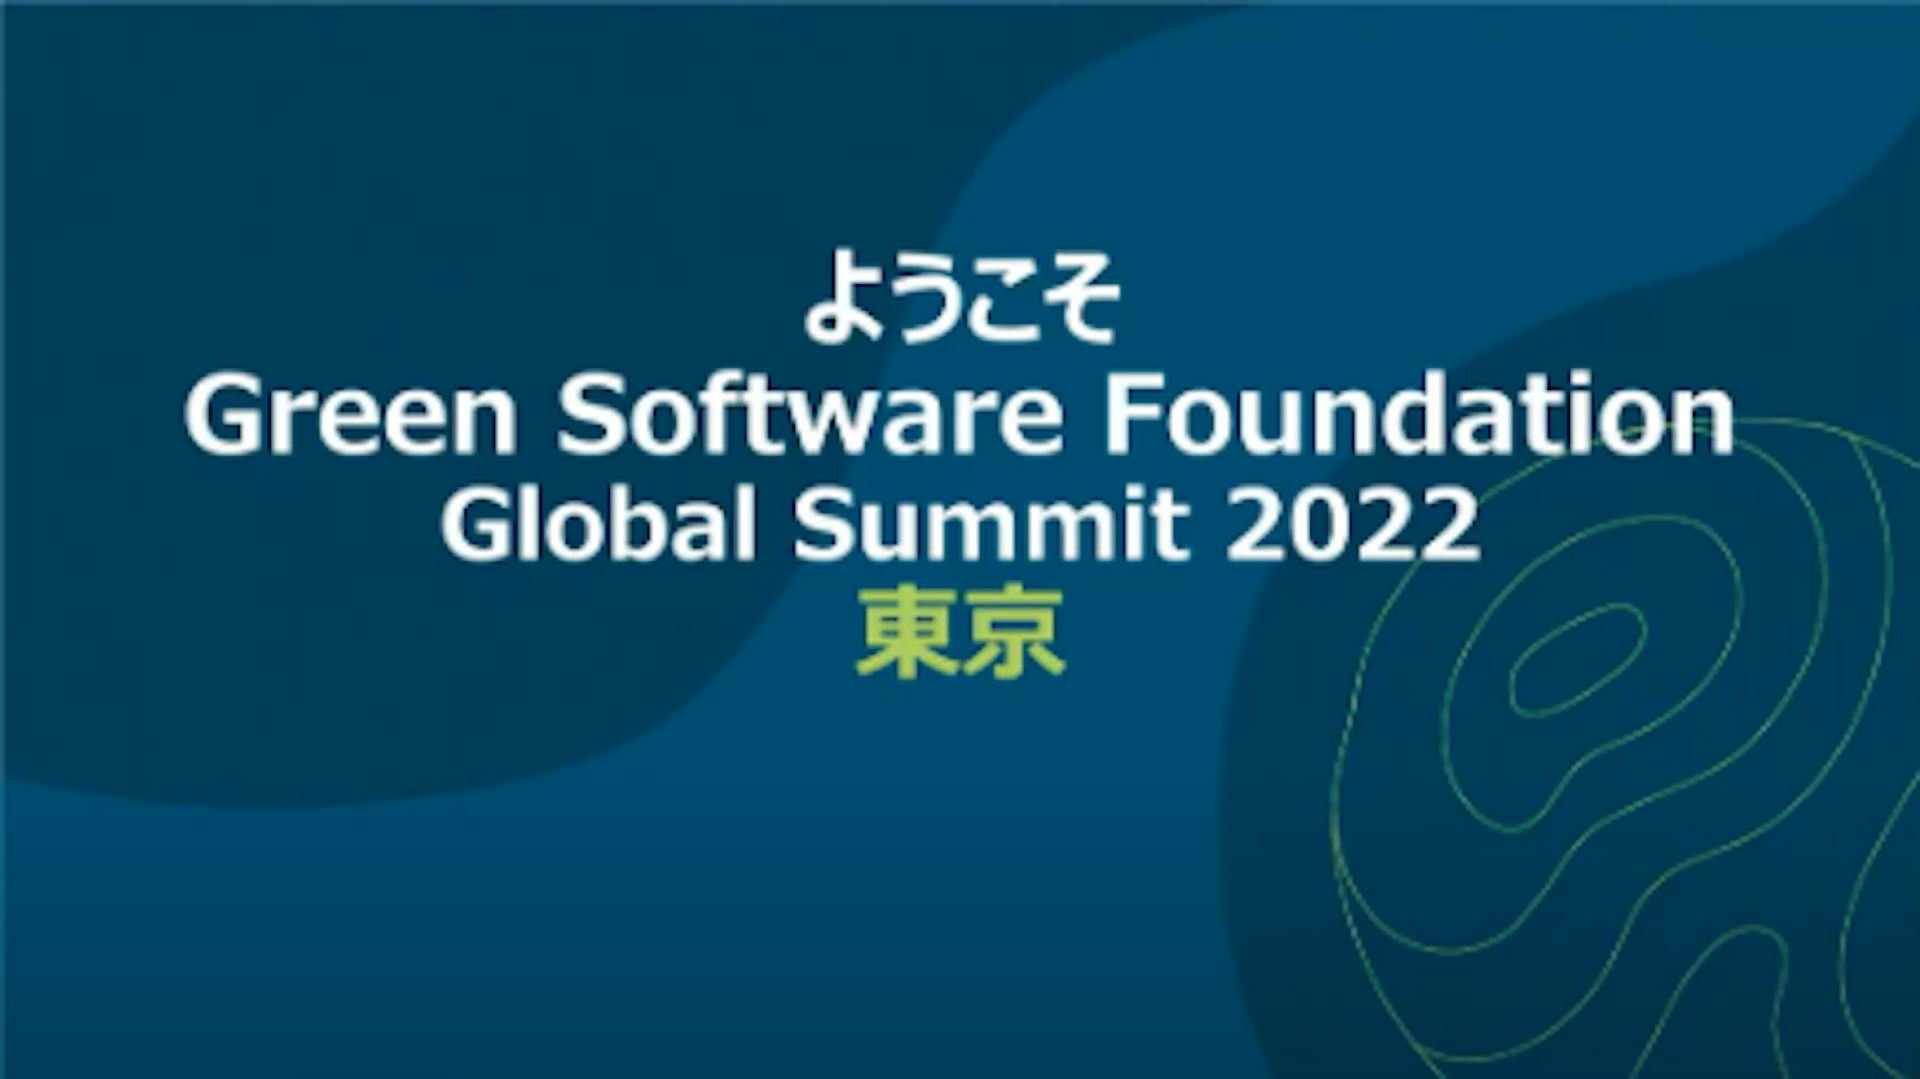 GSF GLOBAL SUMMIT 2022 TOKYO